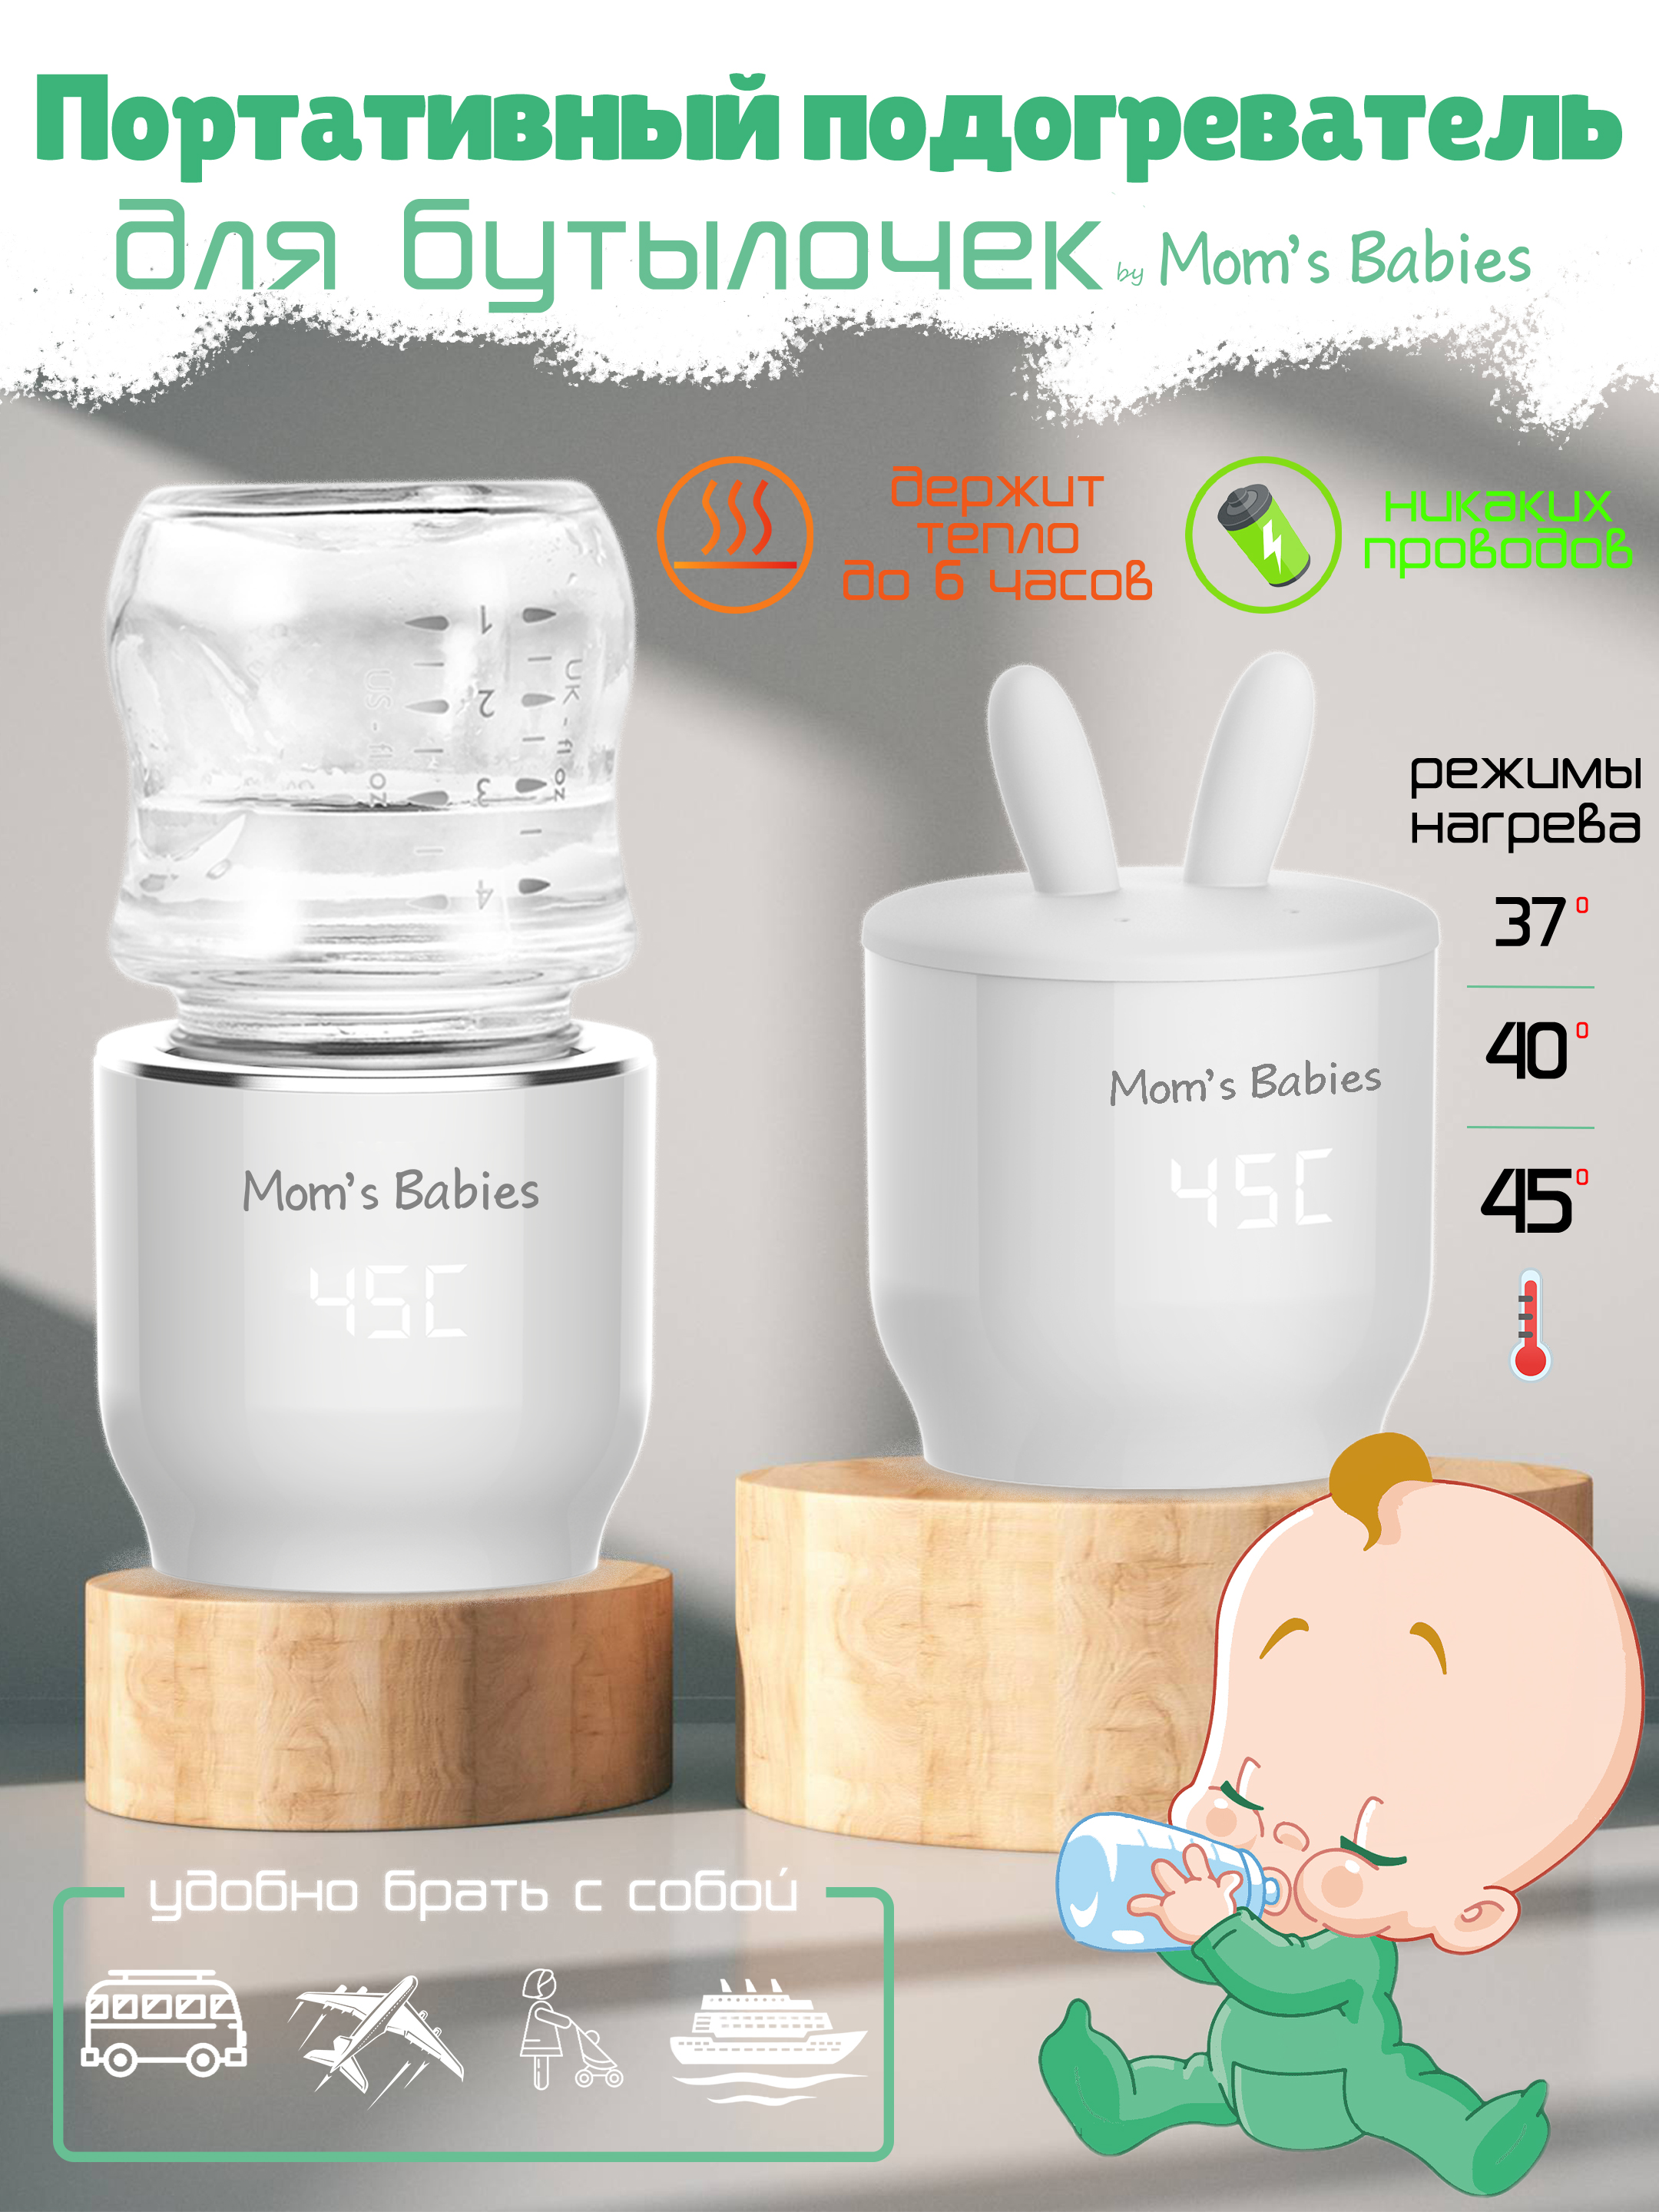 Портативный подогреватель Mom's Babies FS01 для бутылочек и детского питания белый подогреватель canpol babies для бутылочек электрический универсальный